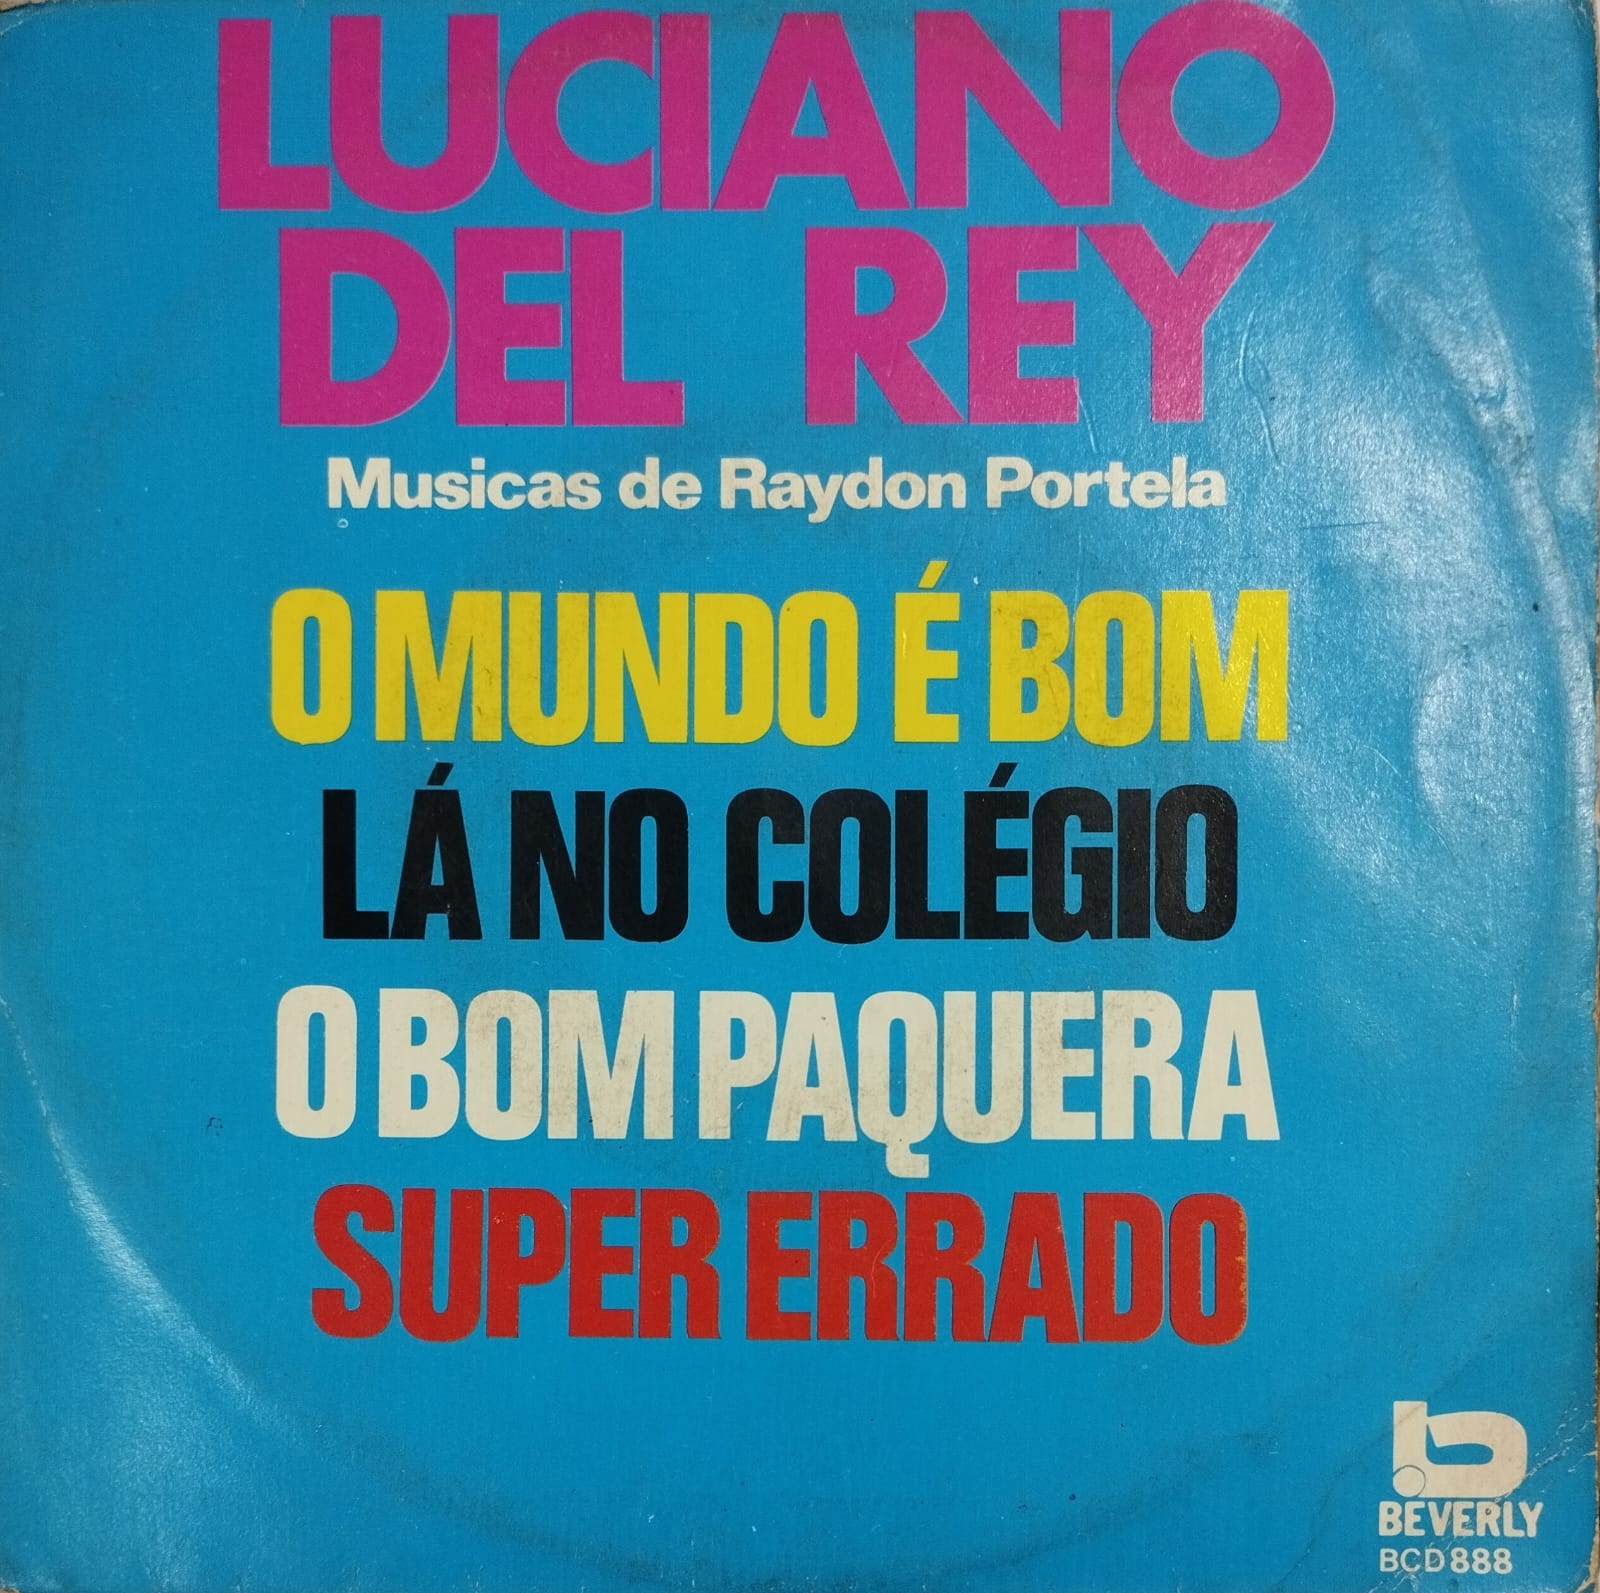 Luciano Del Rey ‎– Musicas de Raydon Portela (Compacto)